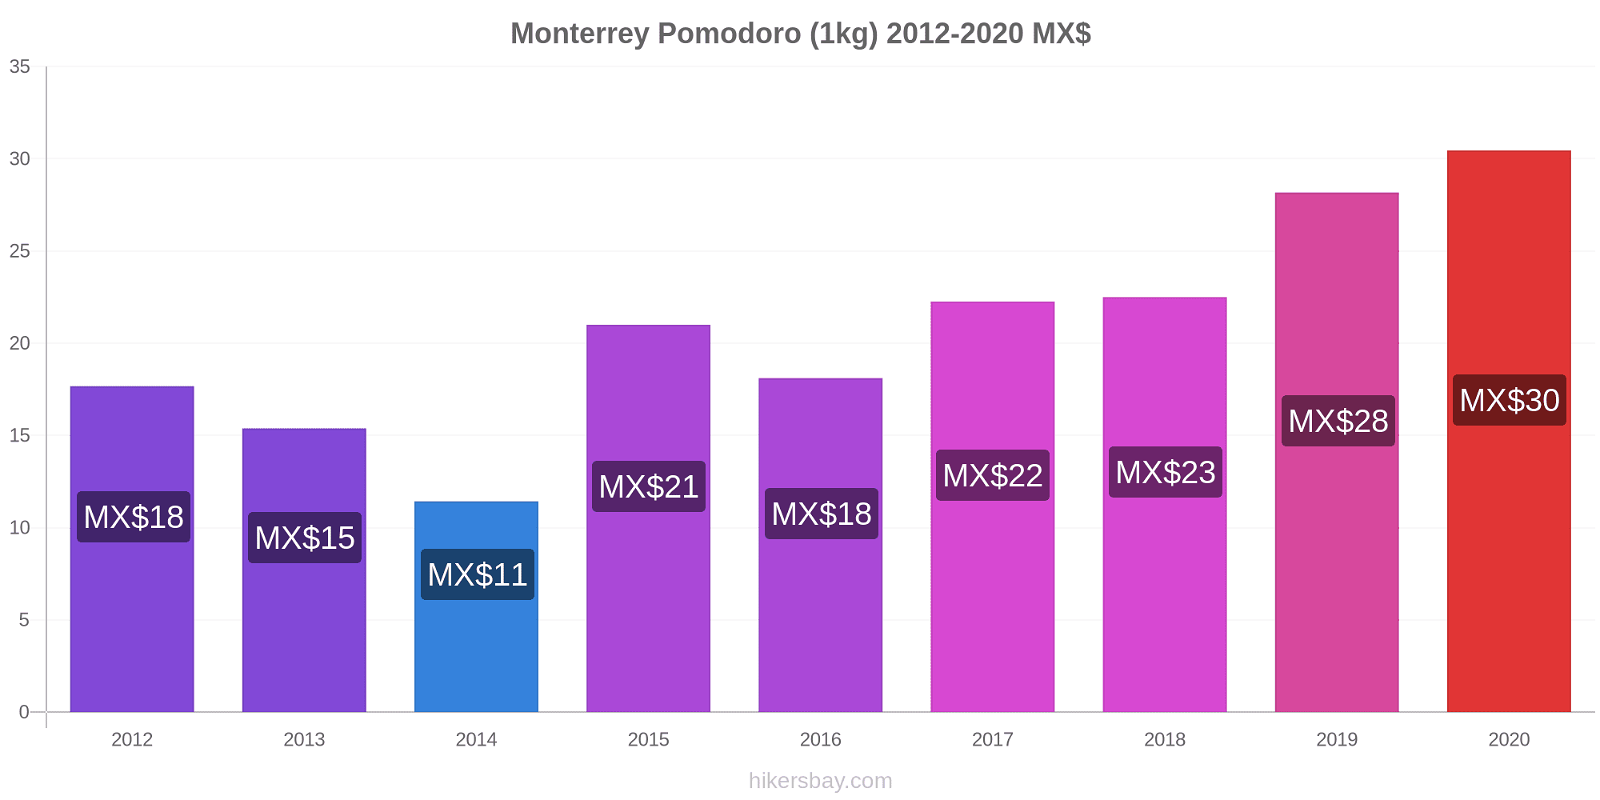 Monterrey variazioni di prezzo Pomodoro (1kg) hikersbay.com